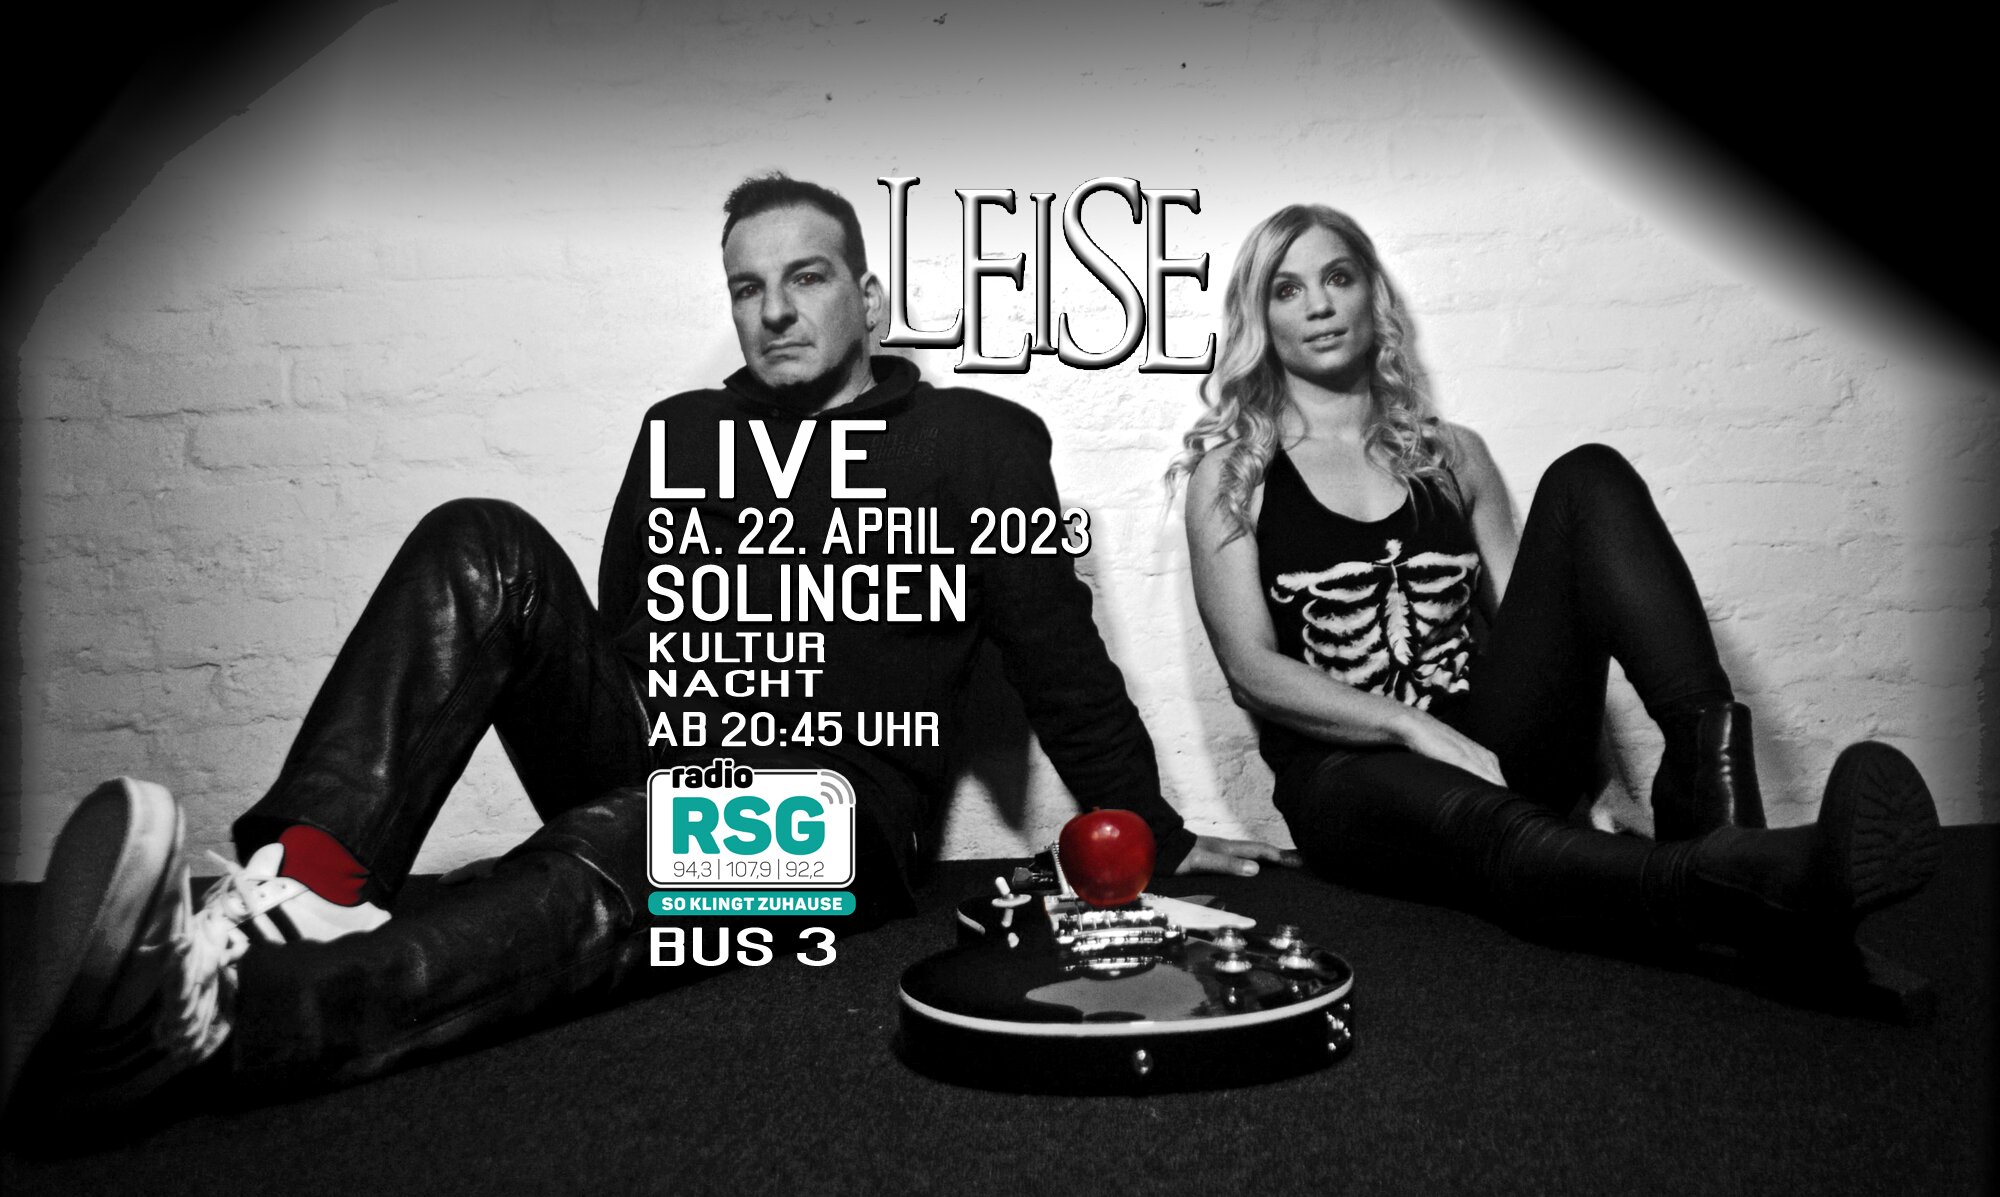 LEISE spielen live auf der Kultur Nacht 2023 in Solingen